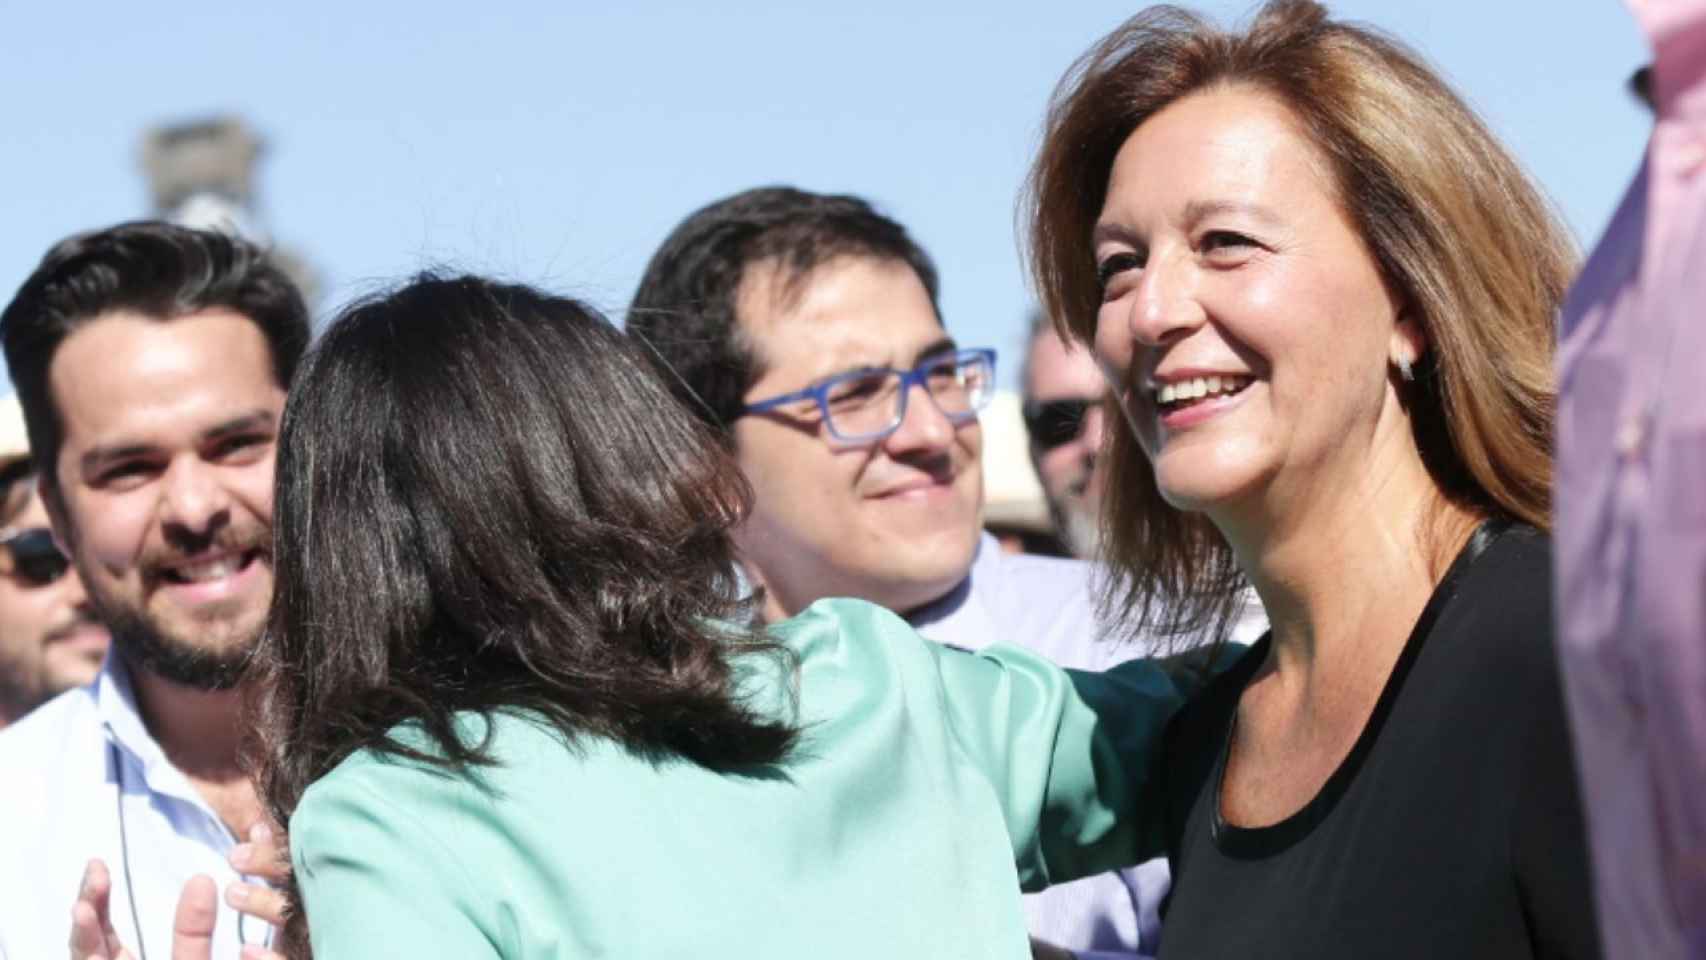 La presidenta del grupo municipal de Ciutadans, Carina Mejías, denuncia adoctrinamiento en las actividades infantiles de la fiesta mayor de Sagrada Família